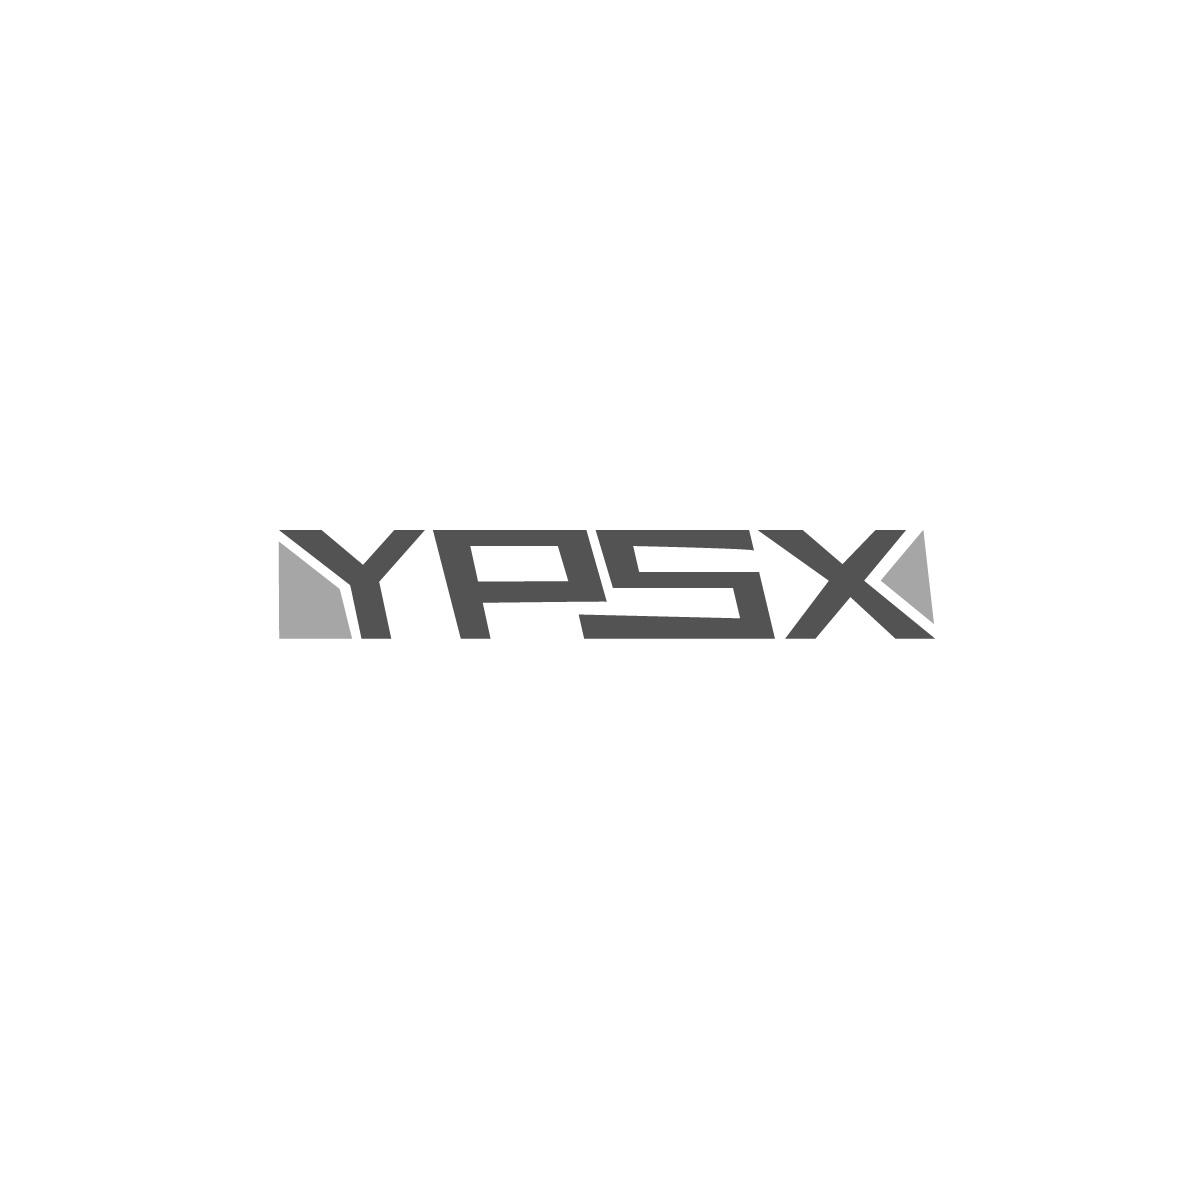 12类-运输装置YPSX商标转让